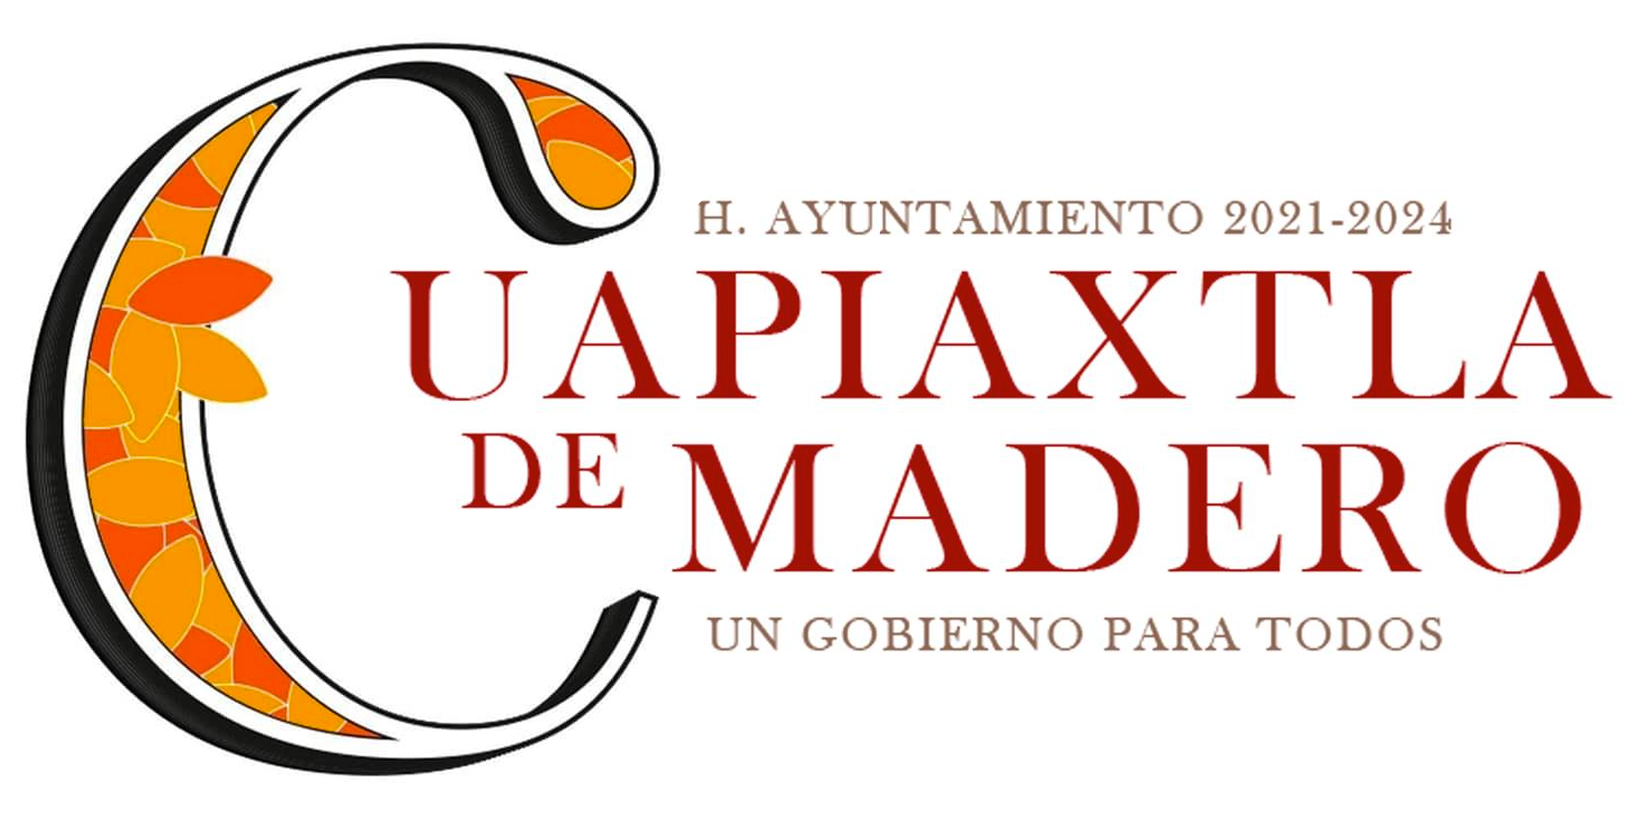 H. Ayuntamiento de Cuapiaxtla de Madero 2021-2024